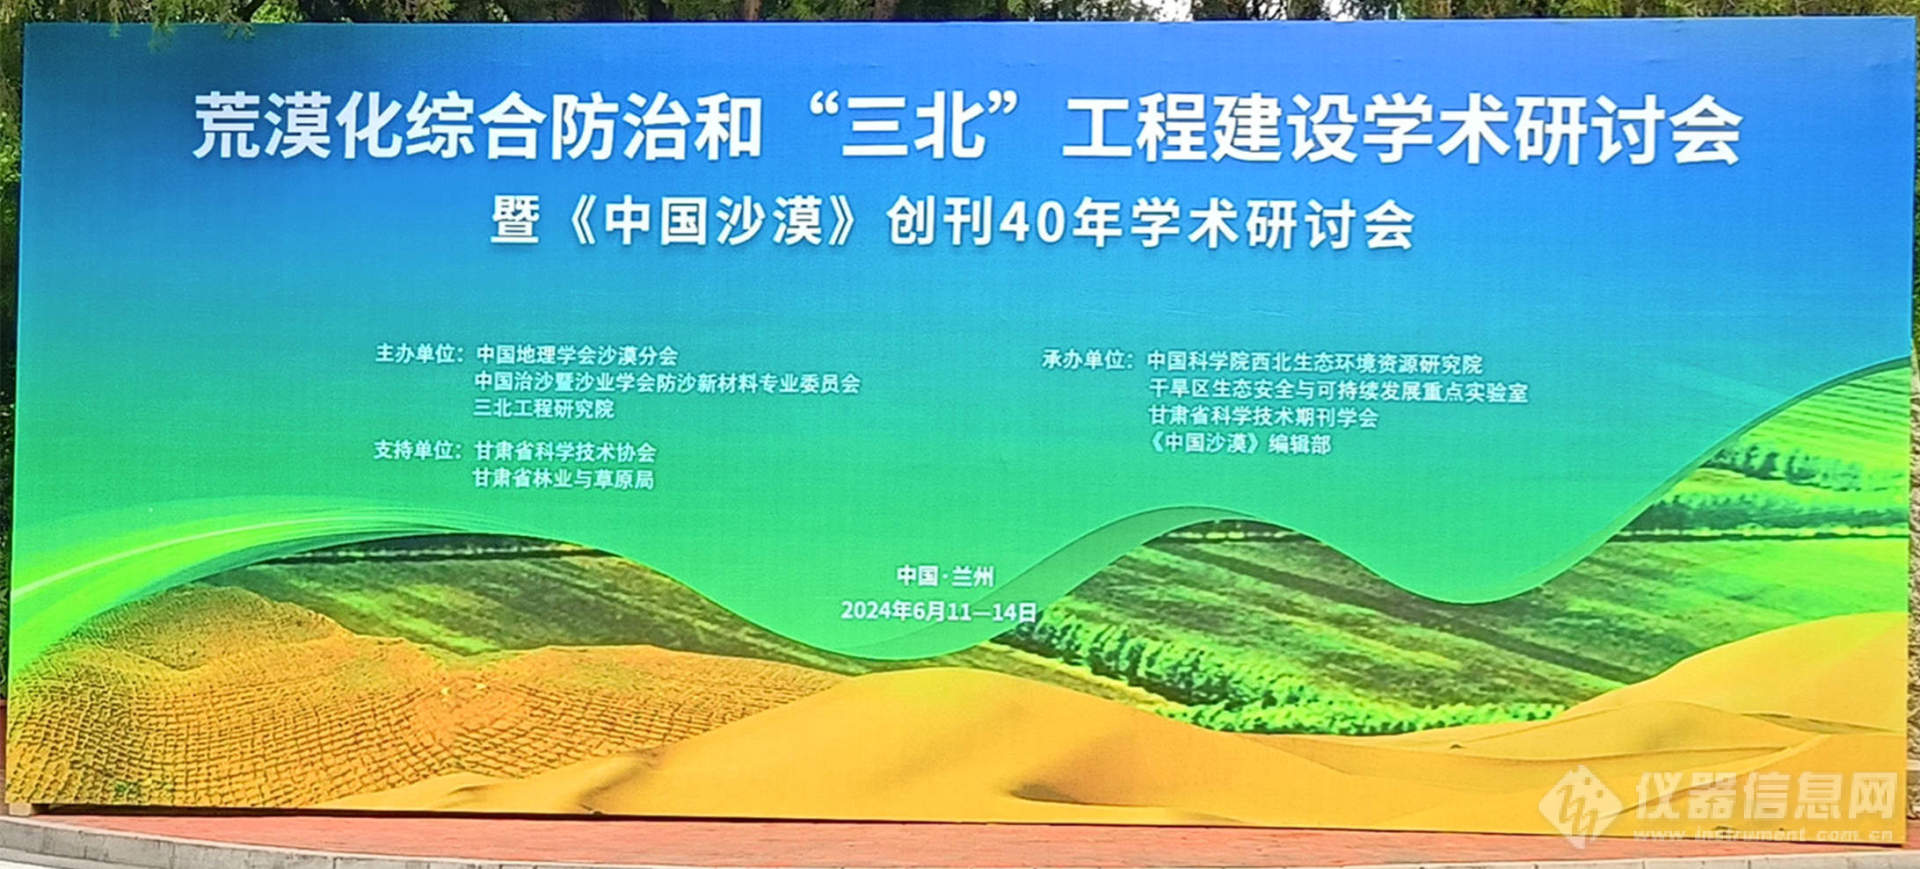 理加联合参加荒漠化综合防治和“三北”工程建设学术研讨会暨《中国沙漠》创刊40年学术研讨会